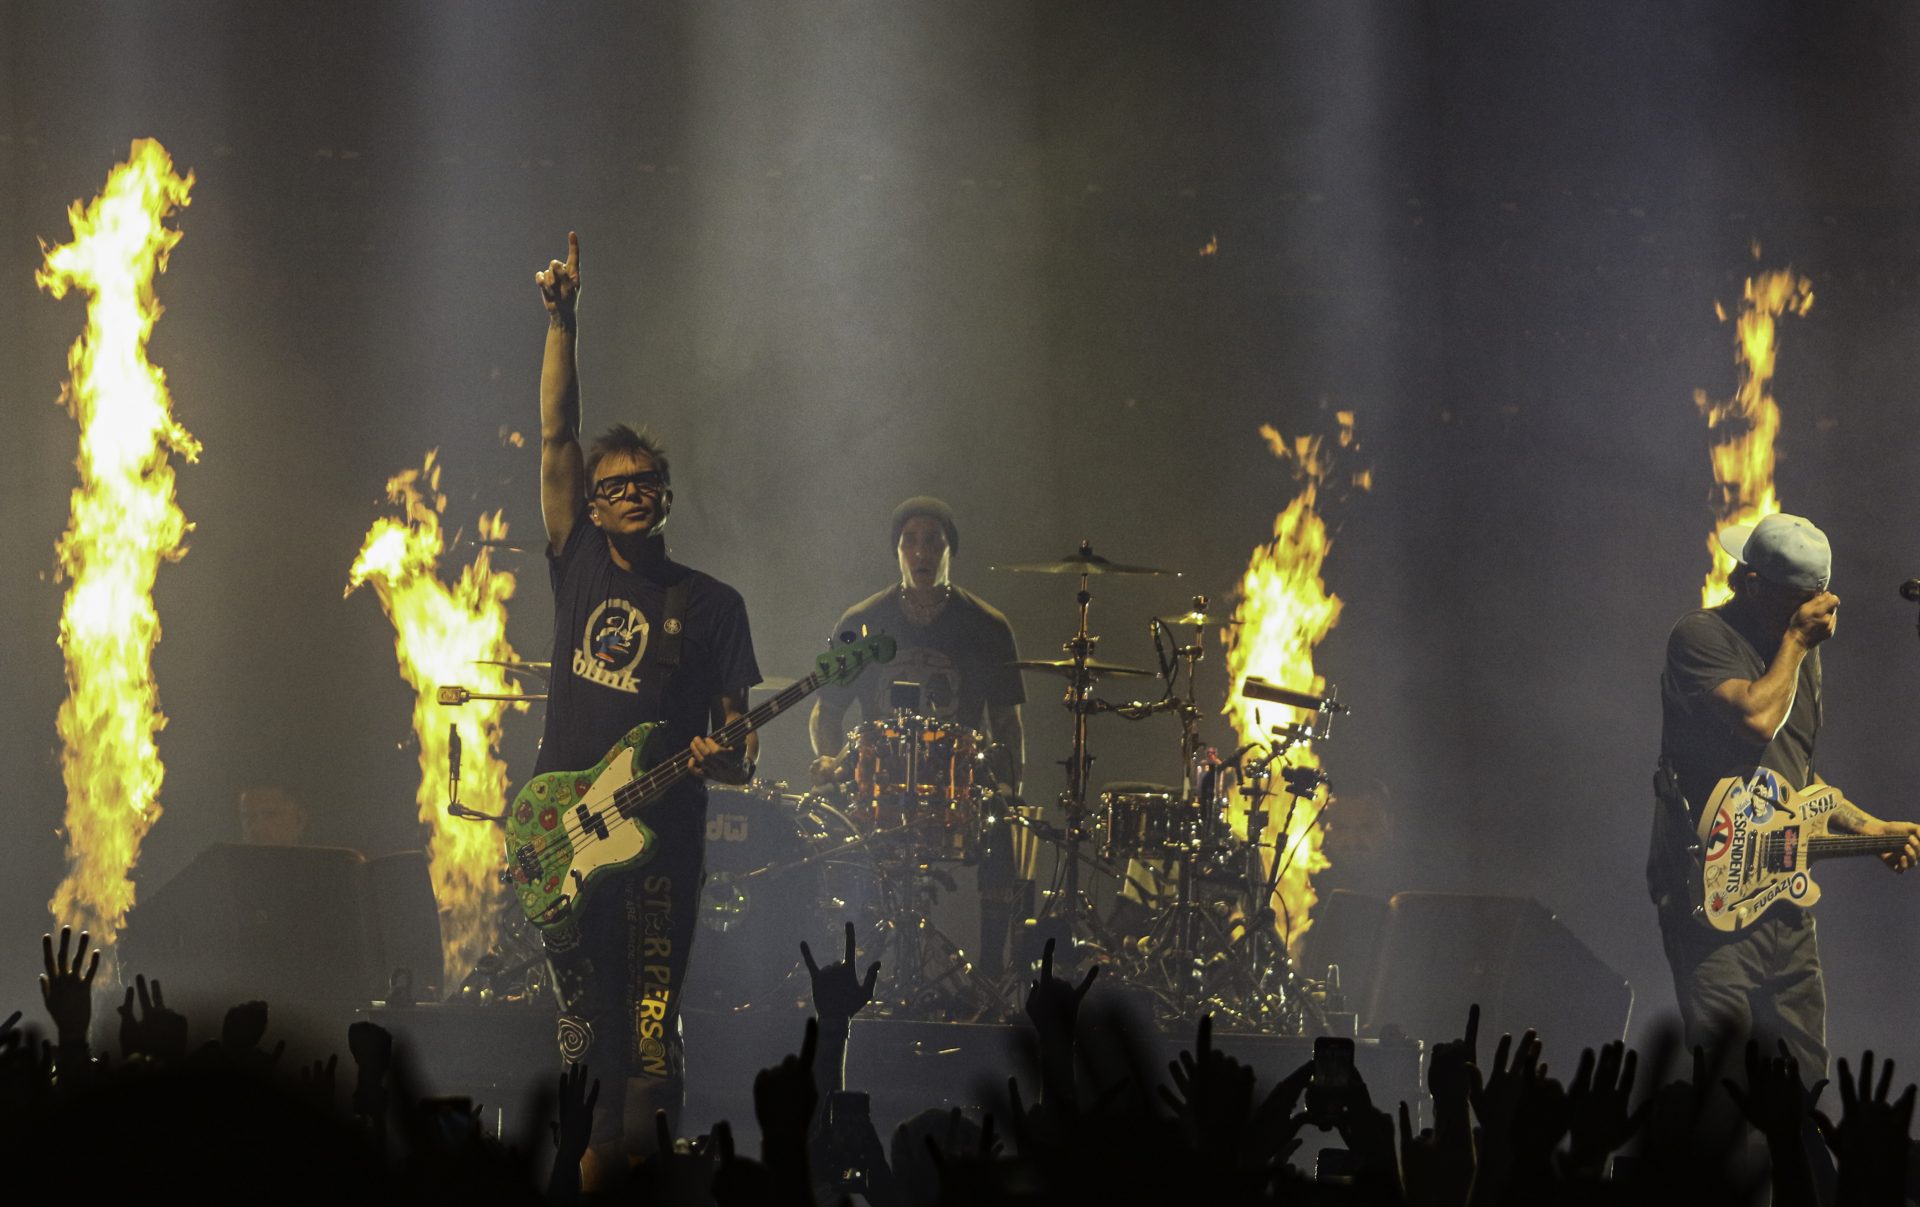 As imagens do regresso dos Blink-182 a Portugal